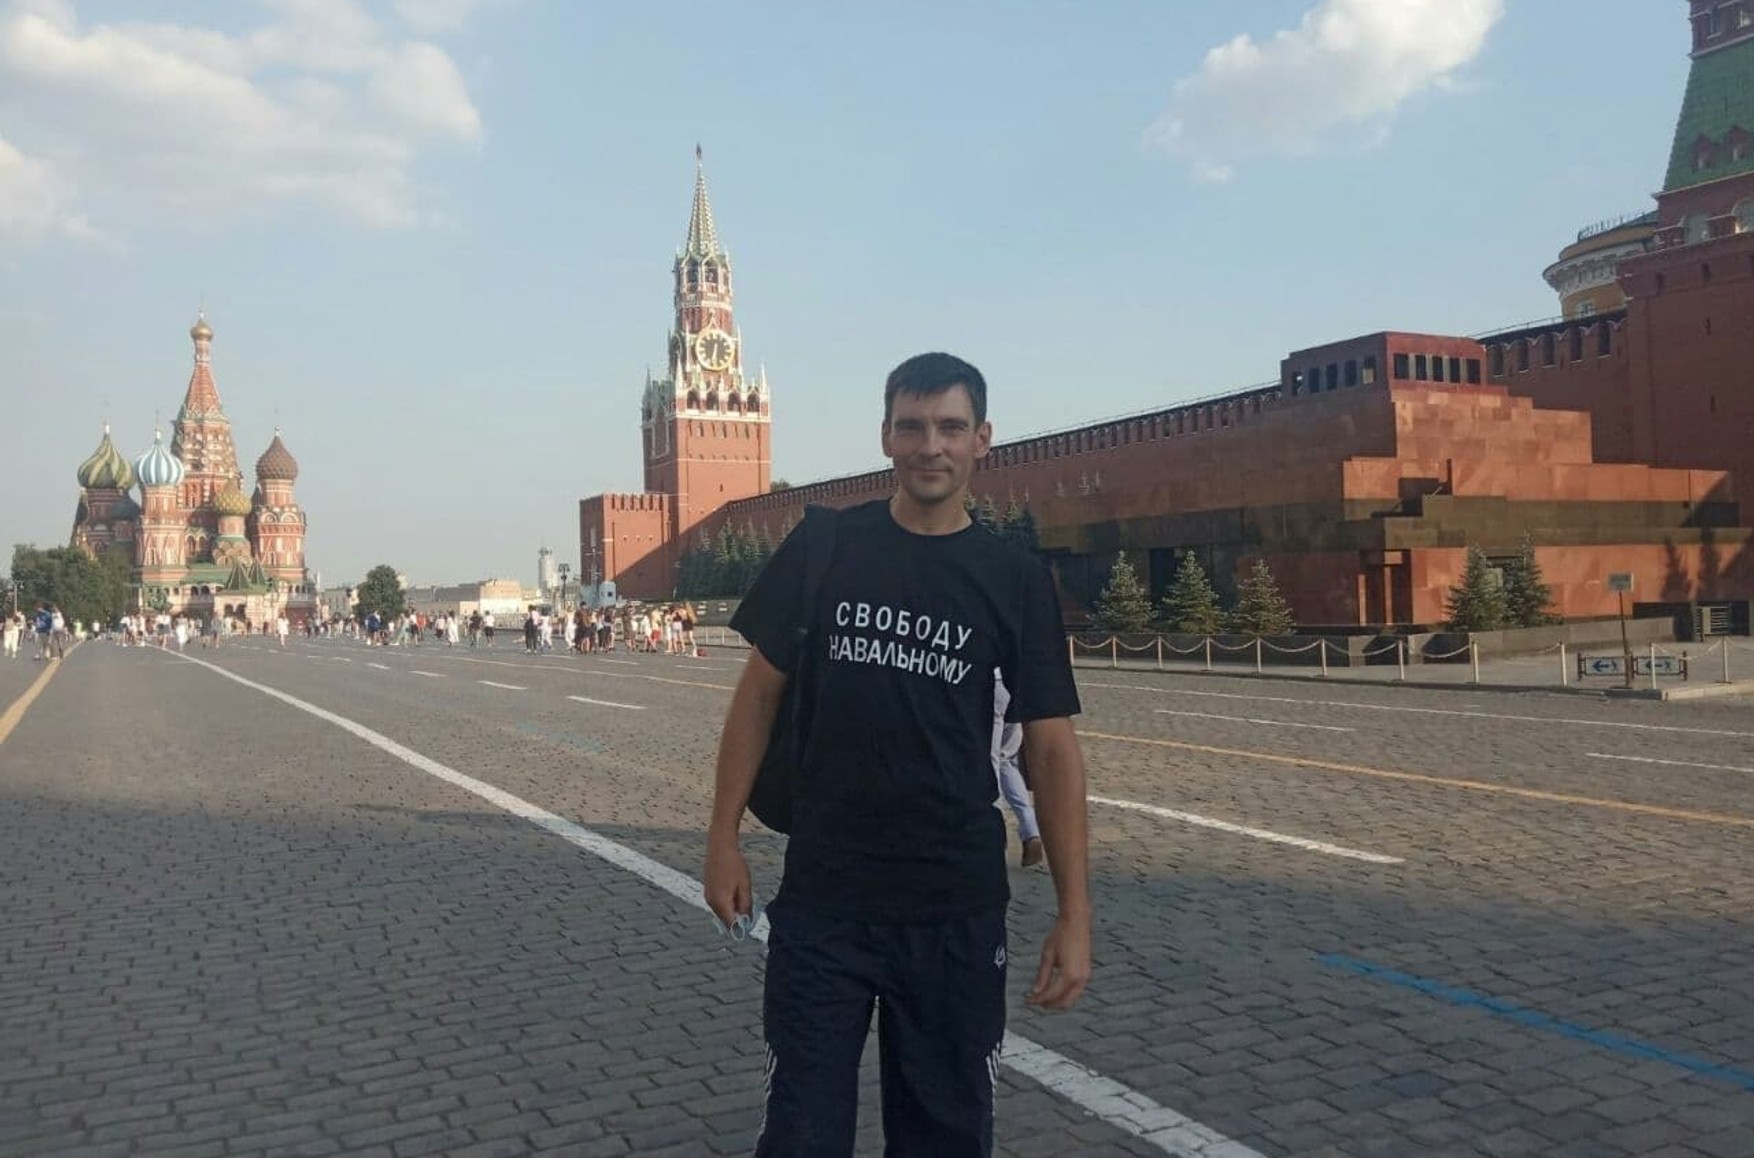 Активісту, який прийшов на Червону площу в футболці «Свободу Навальному», дали 10 діб арешту